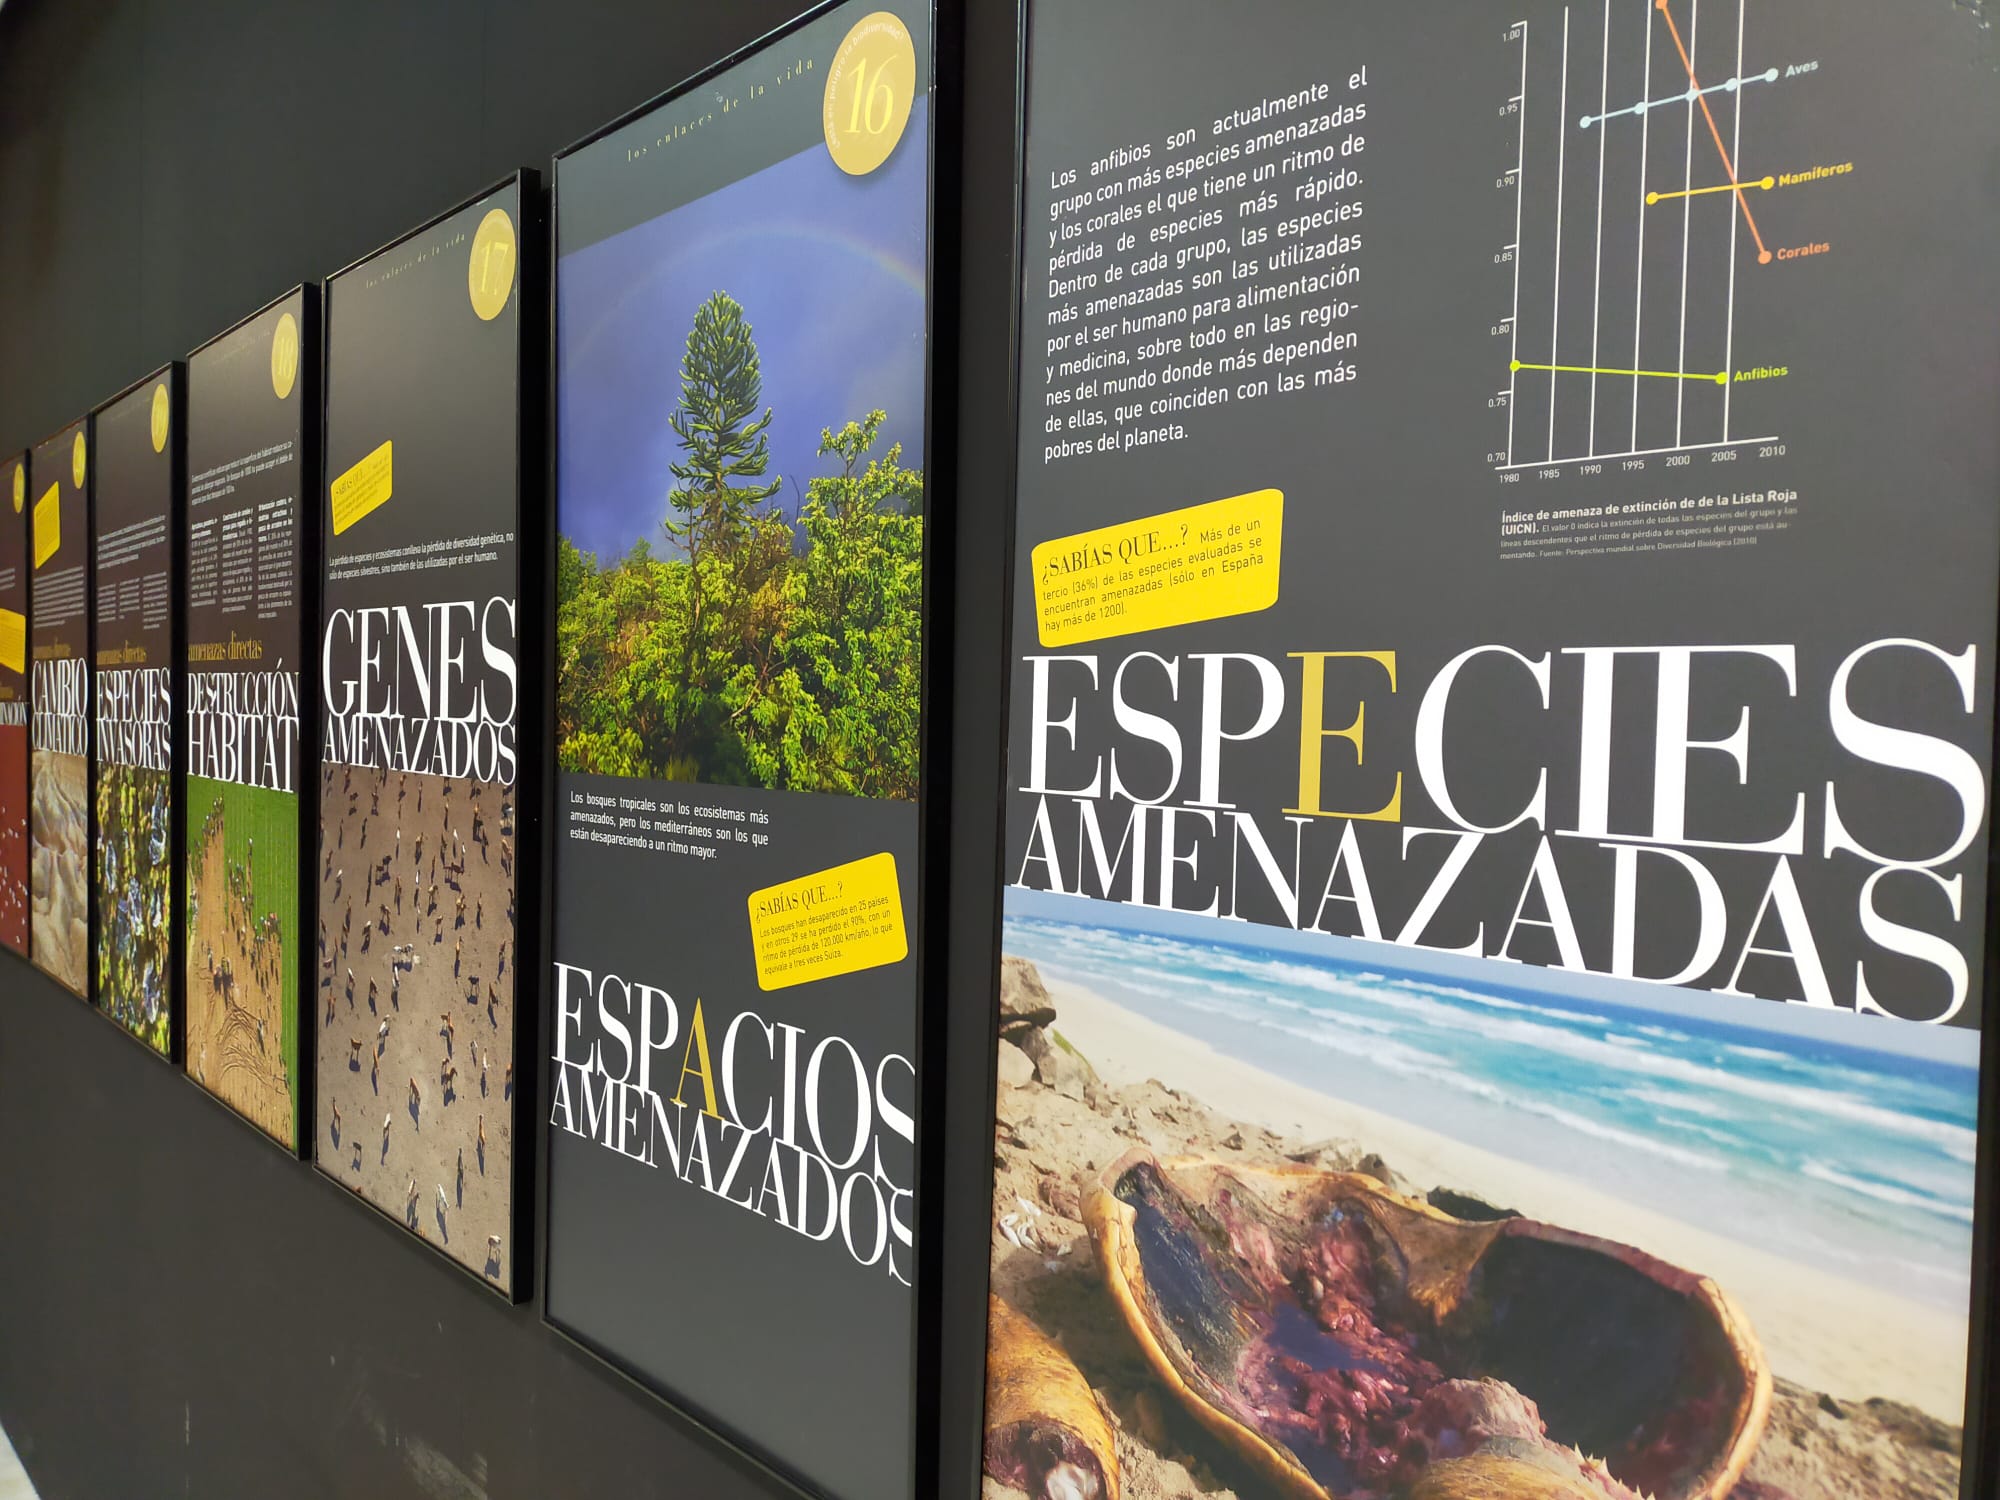 La Casa de la Cultura de Monachil acoge una exposición fotográfica sobre biodiversidad